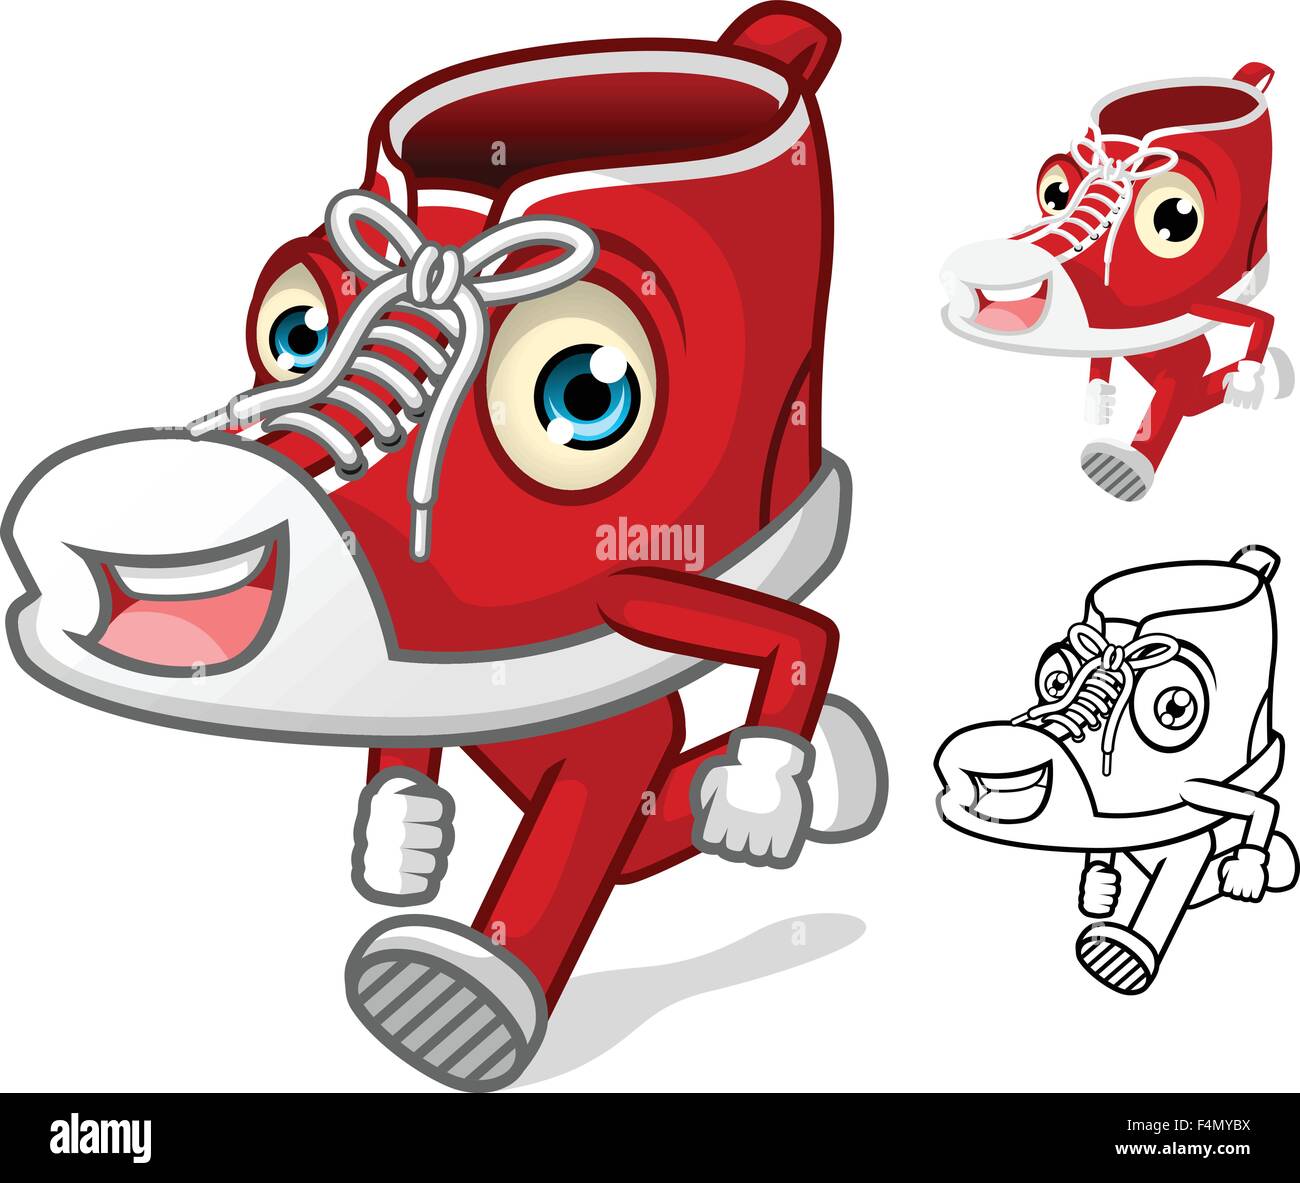 Mascotte di scarpe con estremità personaggio dei fumetti Illustrazione Vettoriale